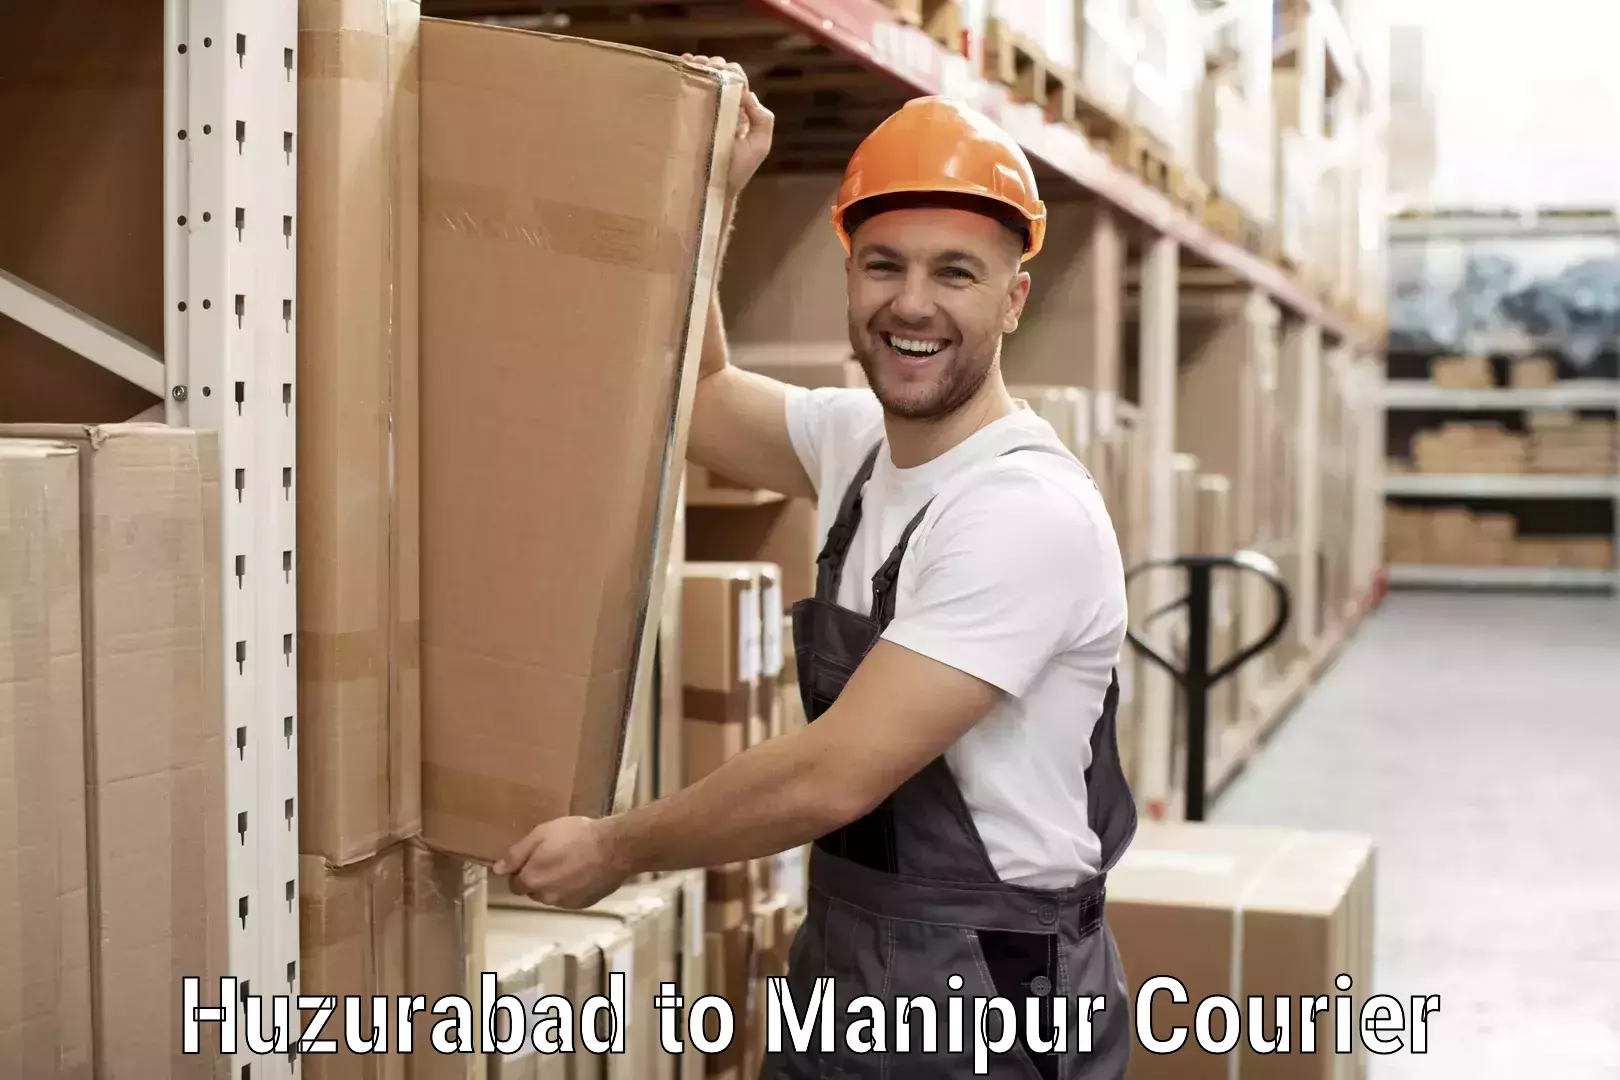 Customer-friendly courier services Huzurabad to Churachandpur